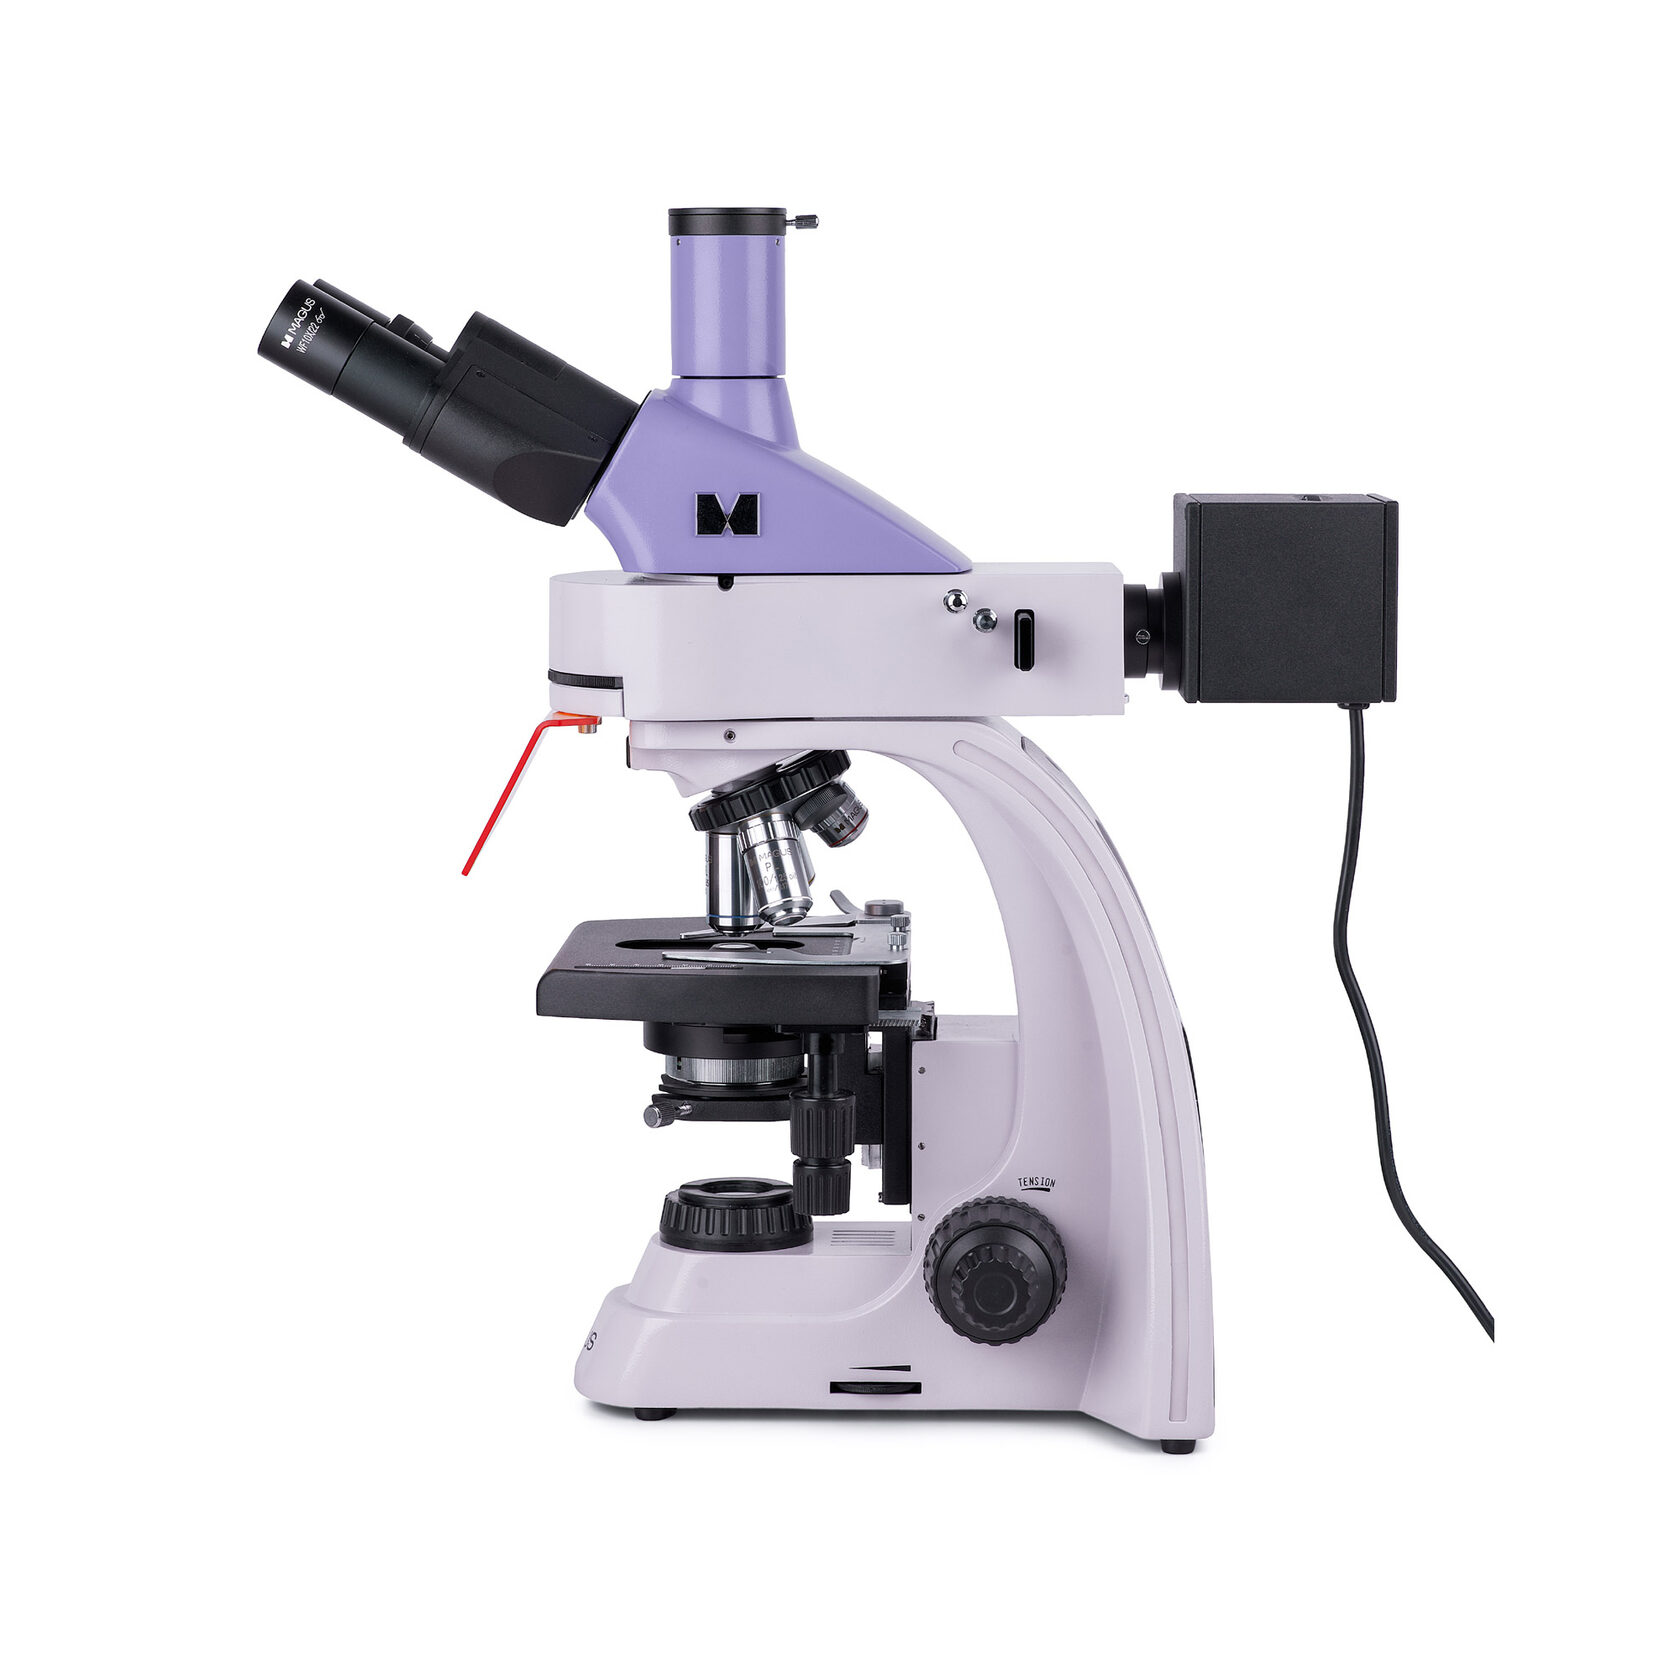 Люминесцентный микроскоп MAGUS Lum 400L